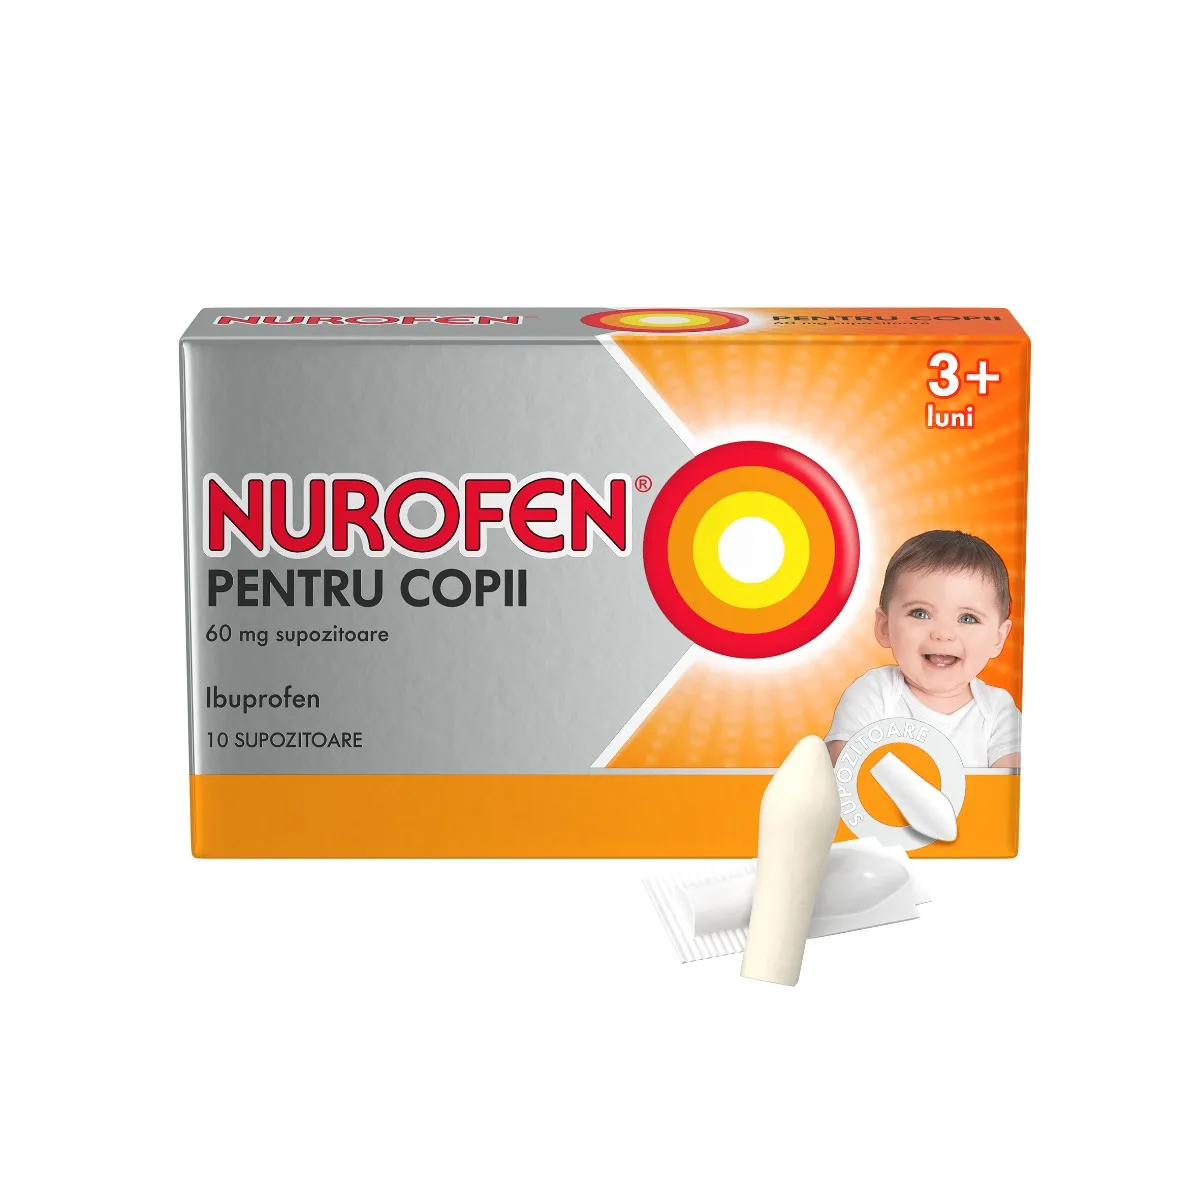 Nurofen supozitoare pentru copii +3 luni 60 mg,  10 supozitoare, Reckitt Benckiser 